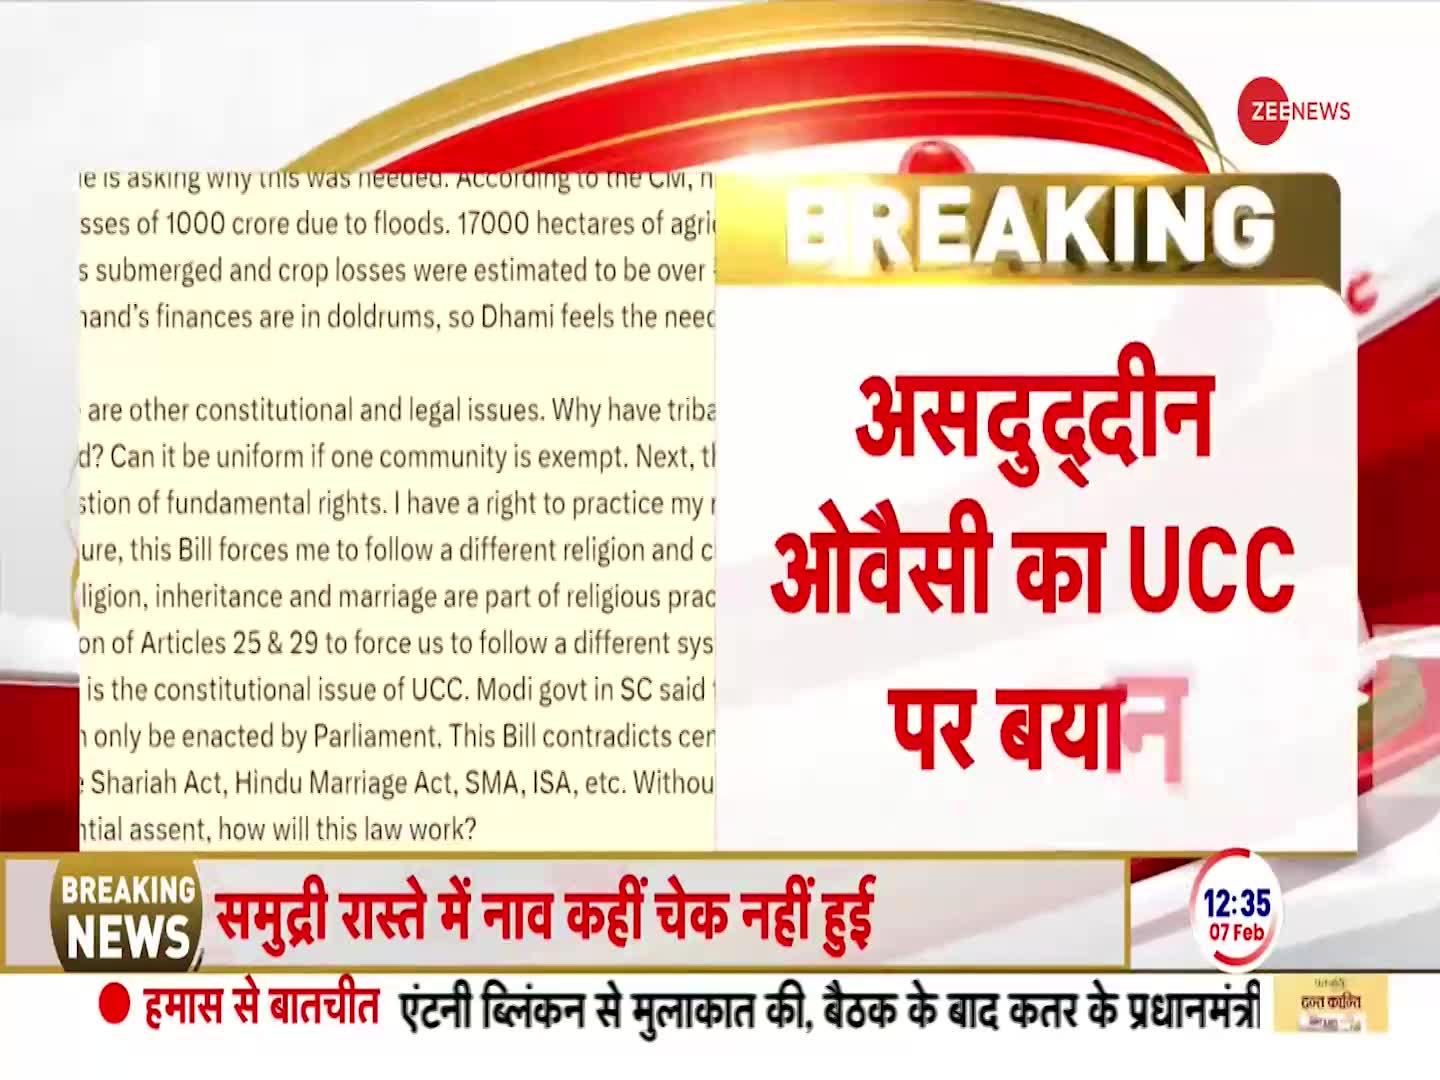 'UCC हिंदू कोड बिल है'-असदुद्दीन ओवैसी का UCC पर बयान